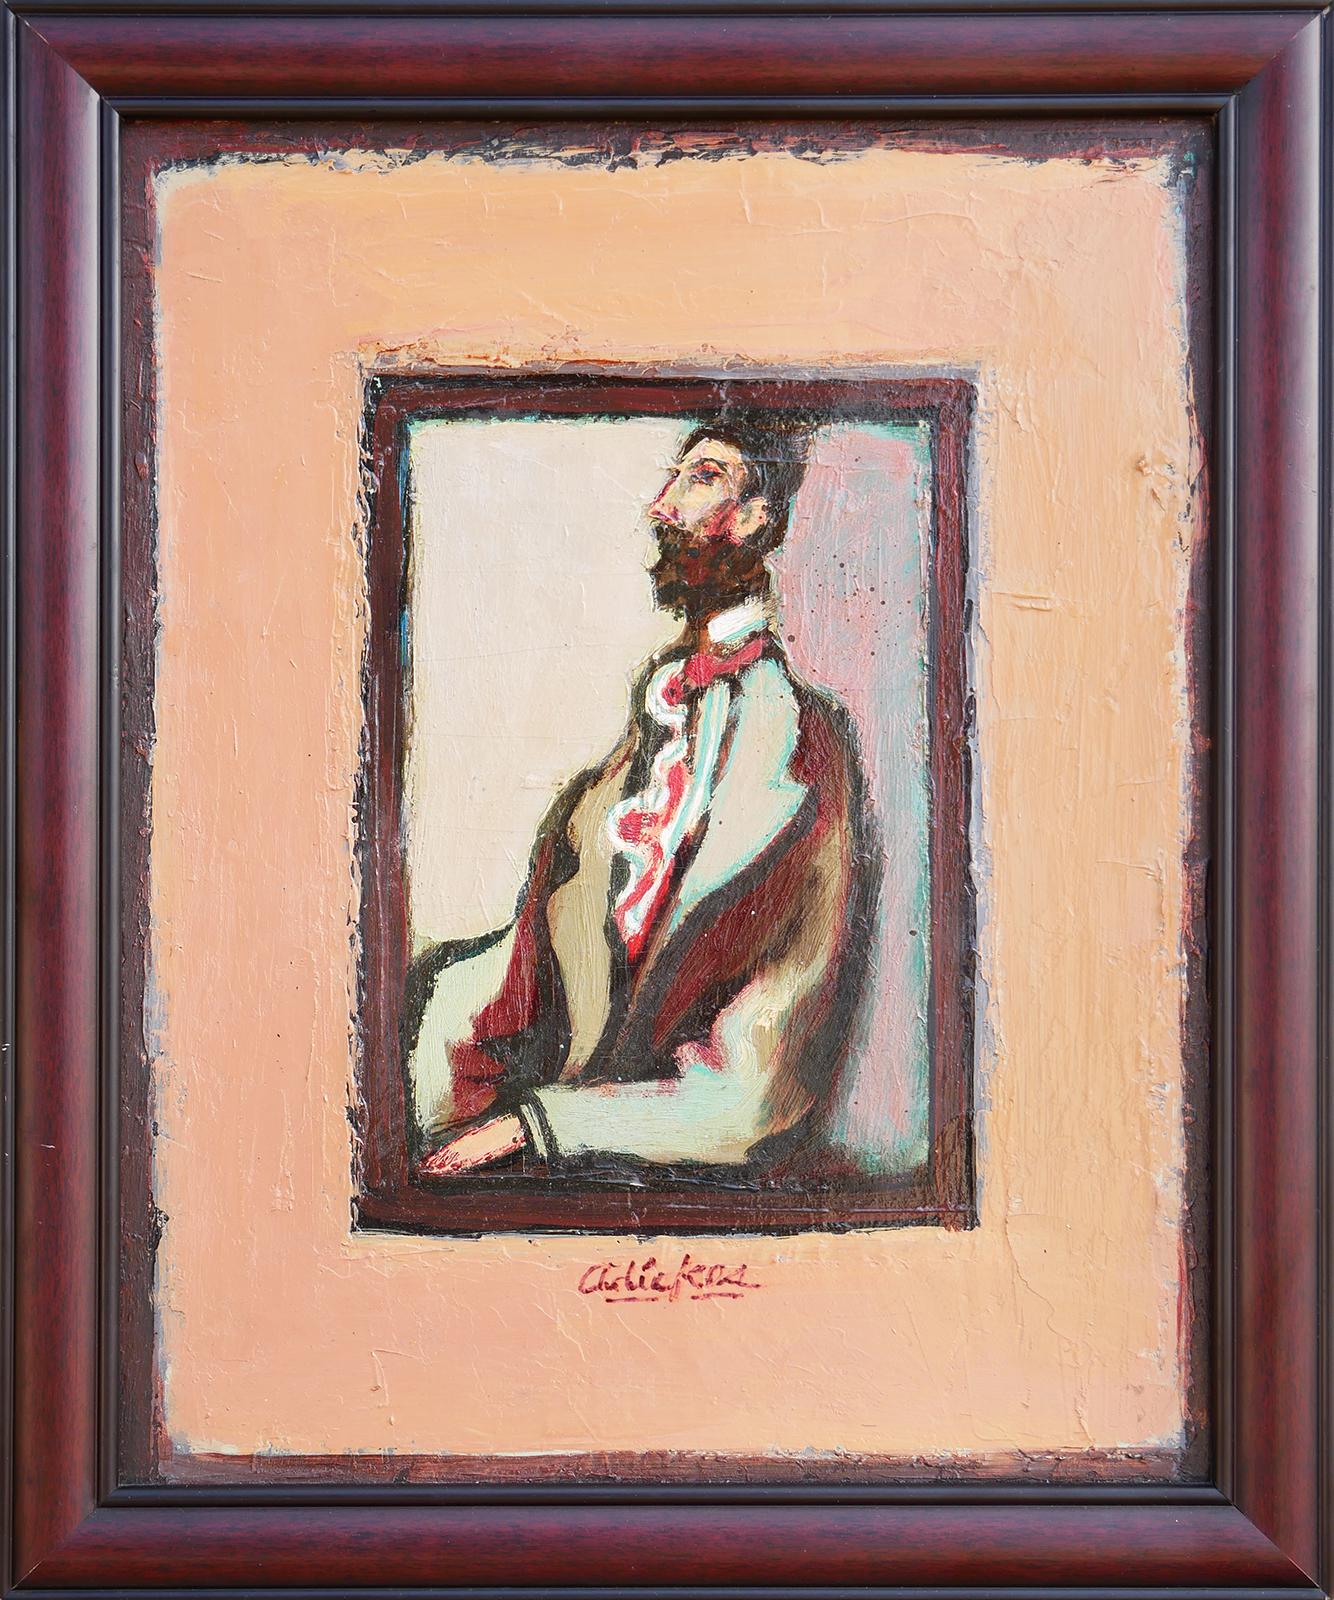 Moderne abstrakte figurative Porträtmalerei des Künstlers David Adickes aus Houston, TX. Das Werk zeigt in der Mitte eine bärtige männliche Figur, die vor einem hellen Hintergrund und einem gemalten hellbraunen Rand sitzt. Signiert vom Künstler am